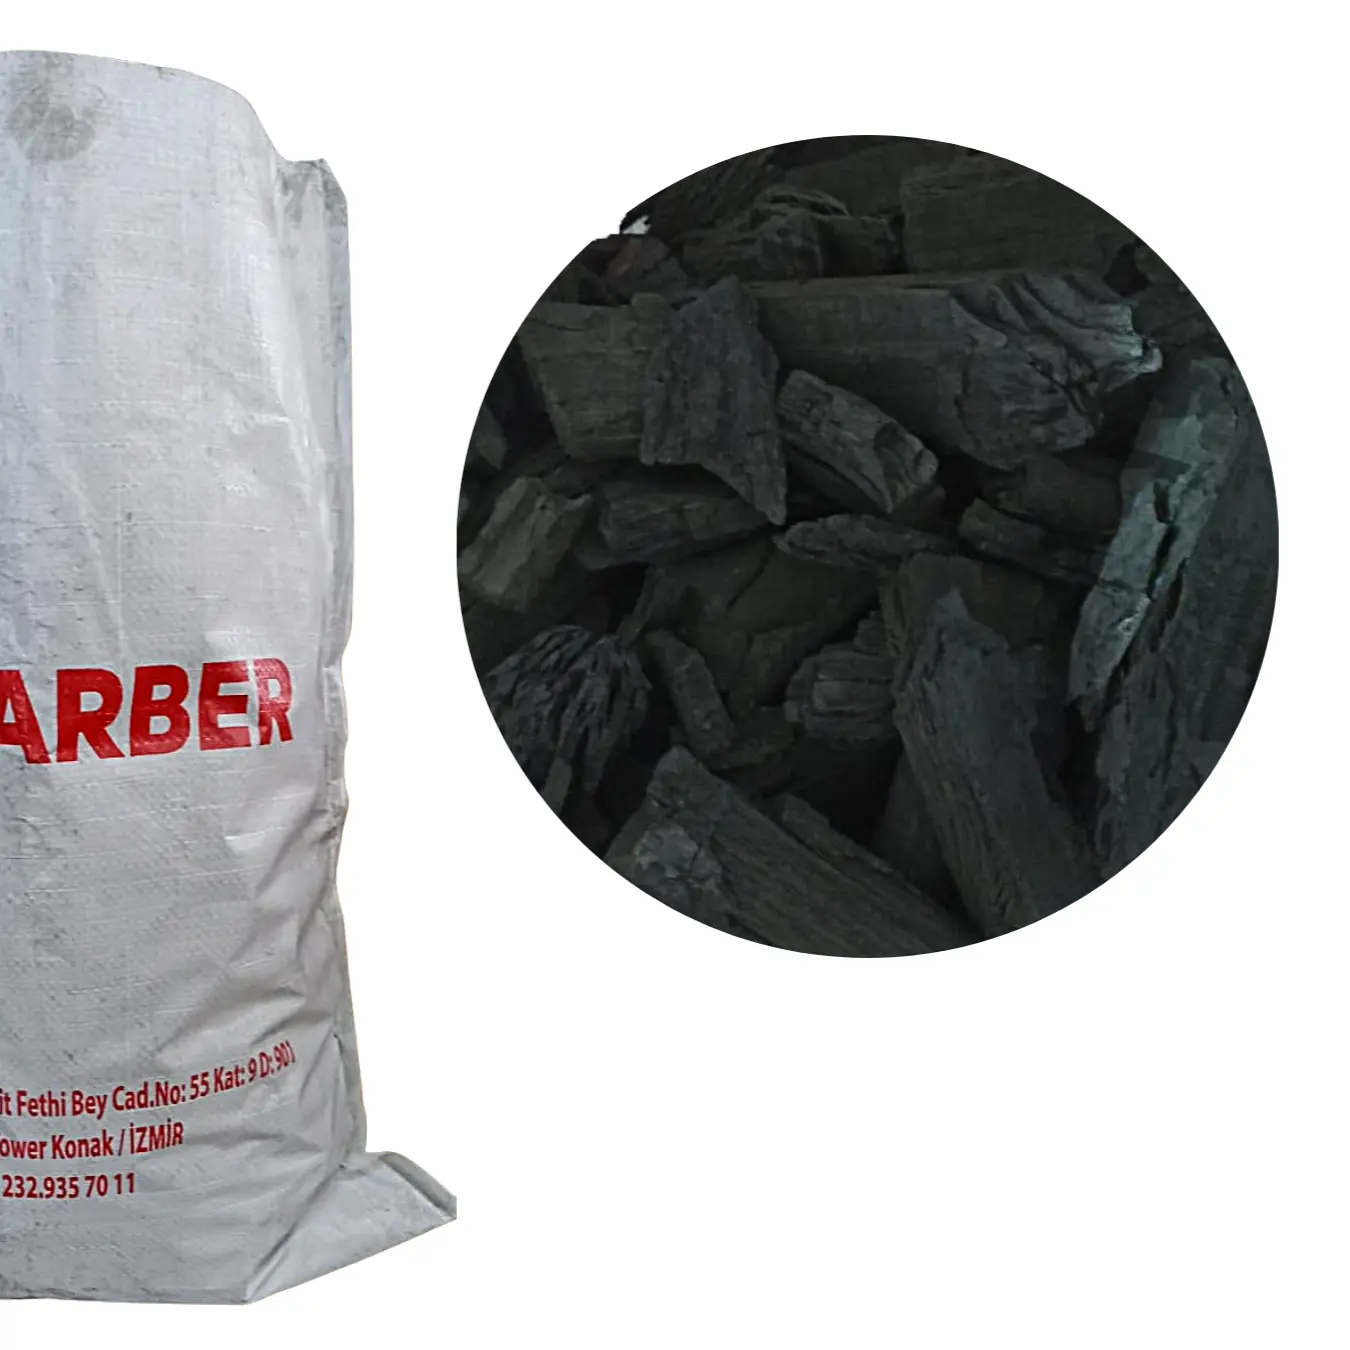 Madeira Lump Acacia Carvão 100% Natural ARBER | 10kg sack | Atacado | Super Qualidade